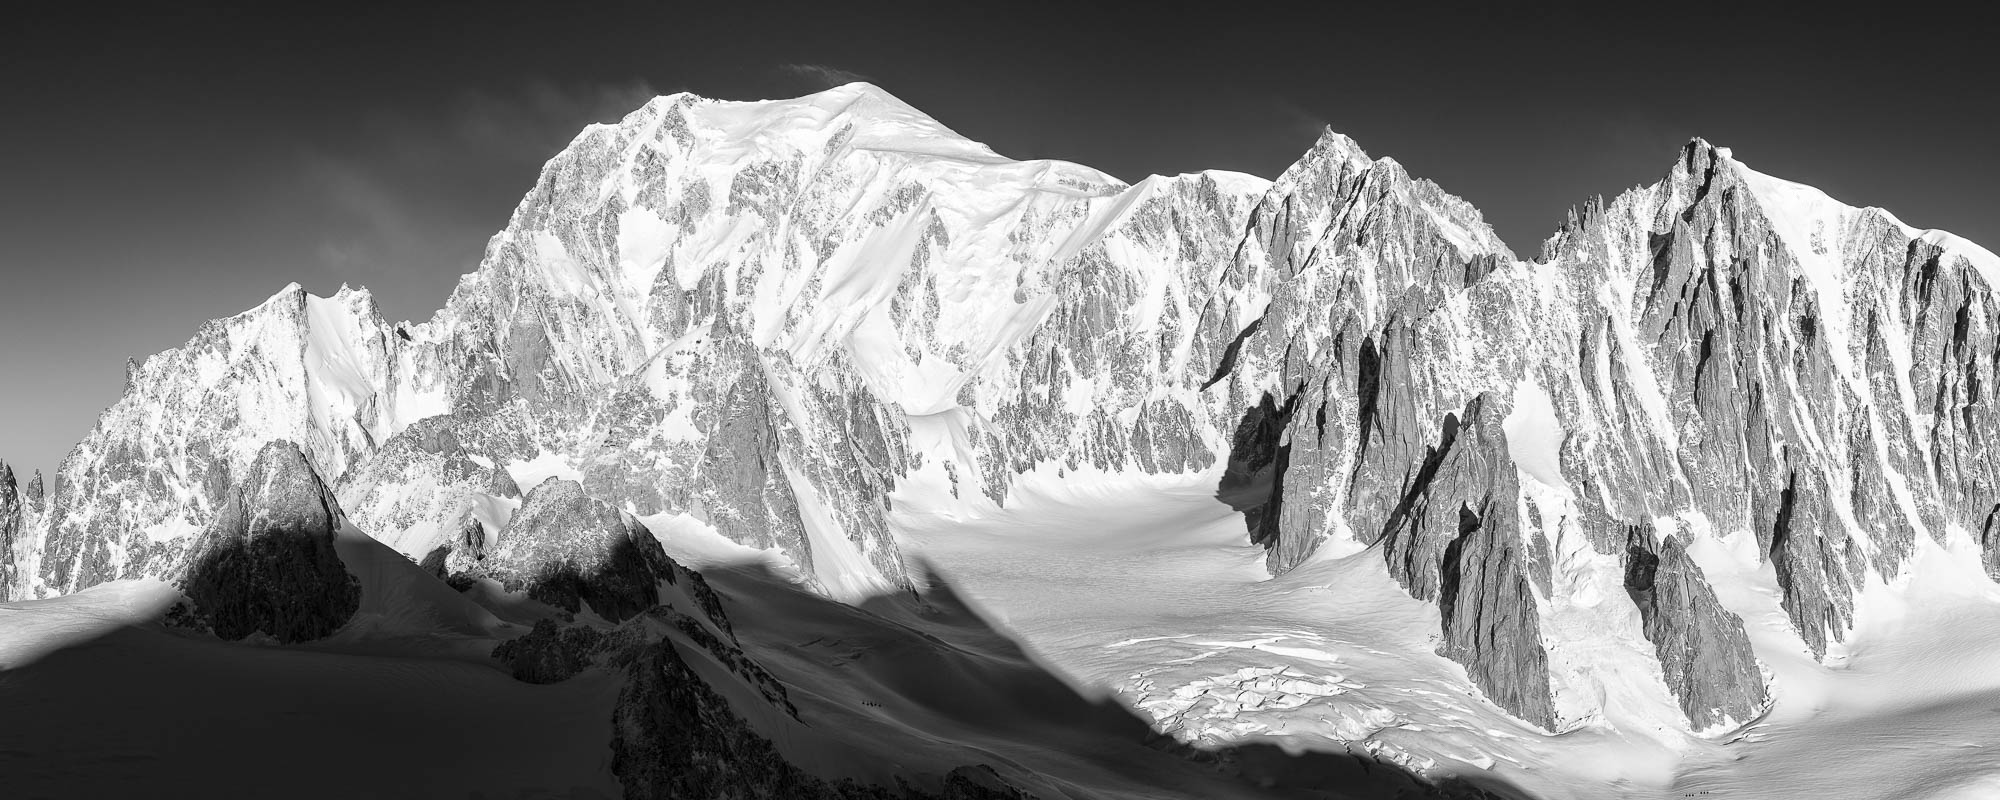 photo du mont blanc en noir et blanc